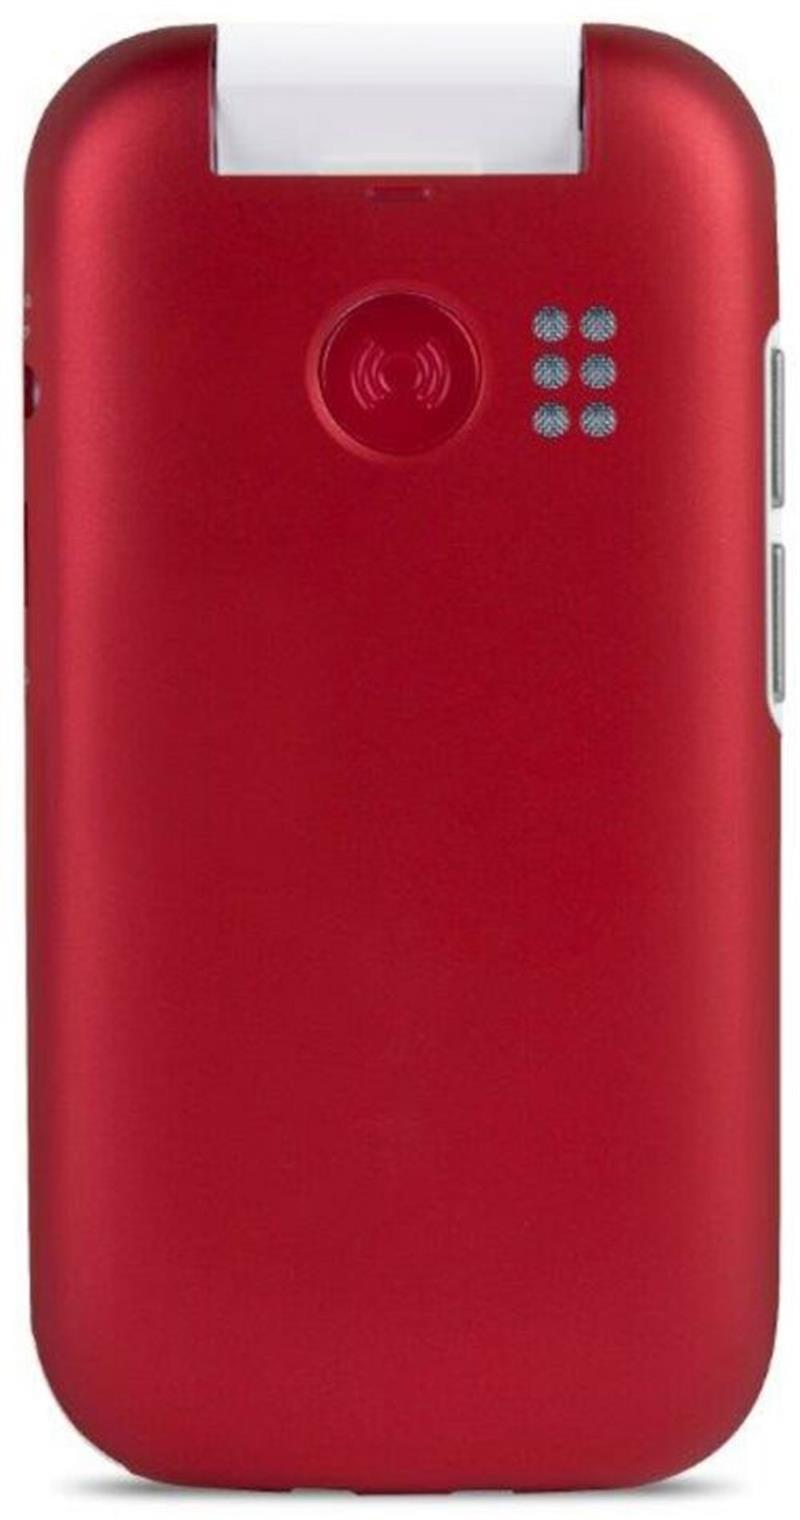 Doro 7030 - 4G Red White Smart Clamshell